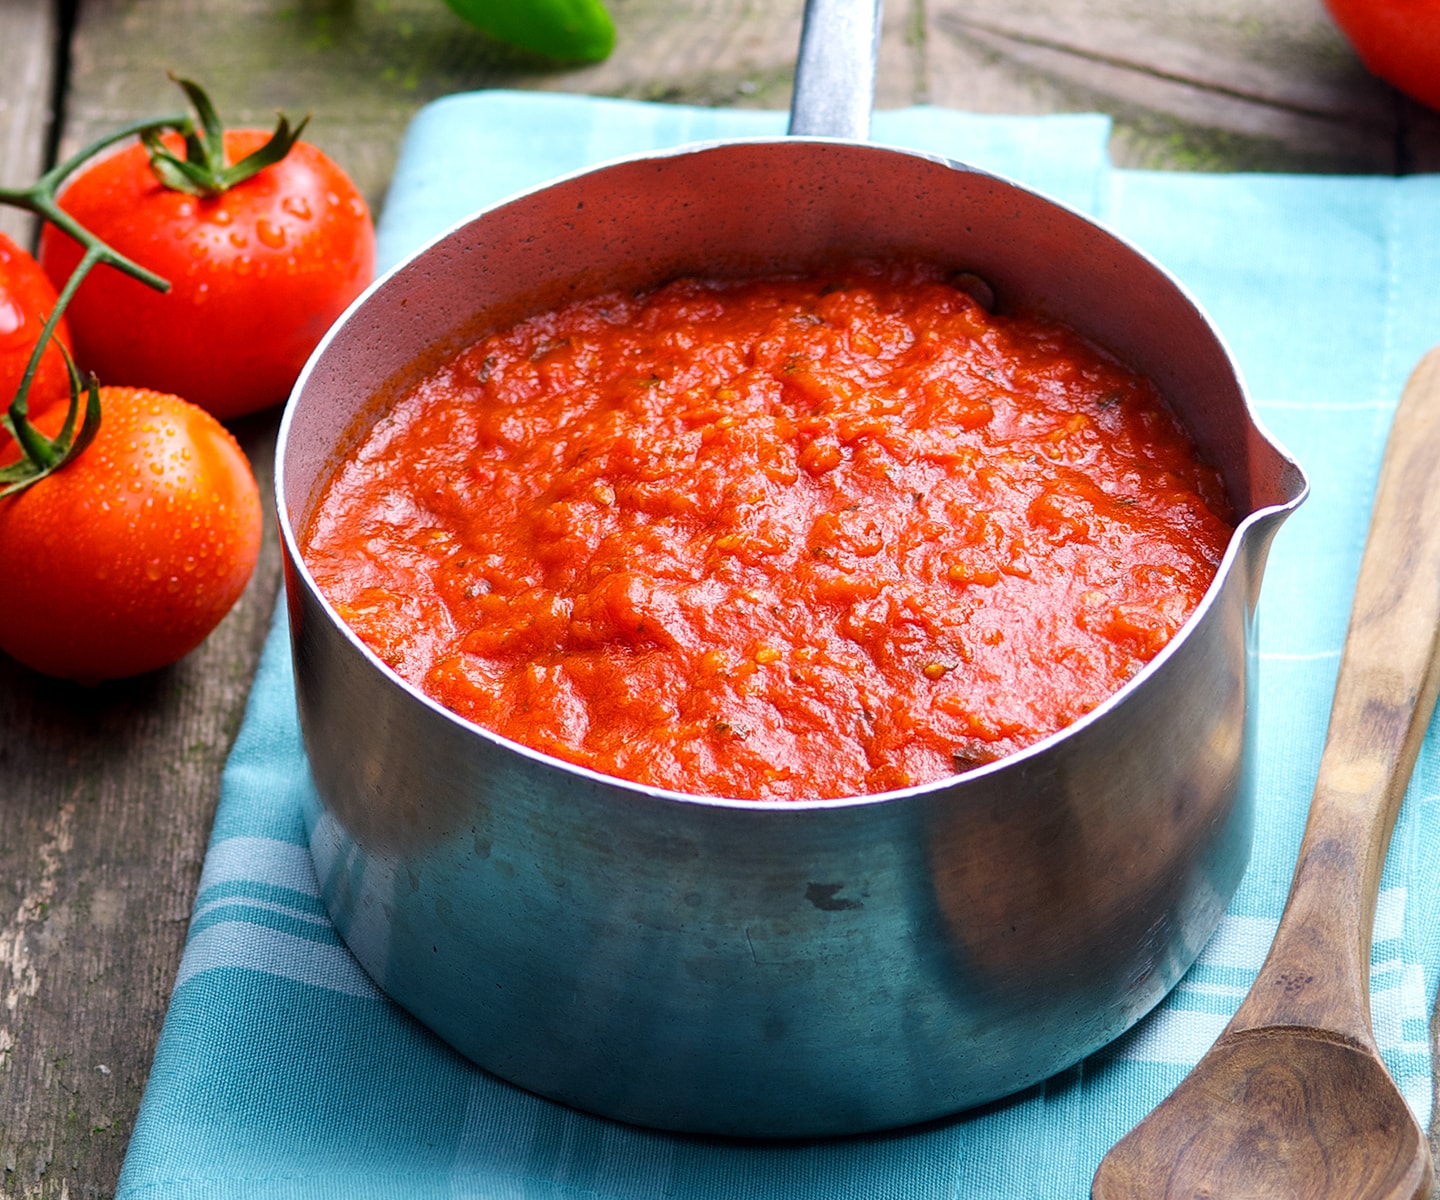  Sauce tomate   della casa  09095 Livraison gratuite 